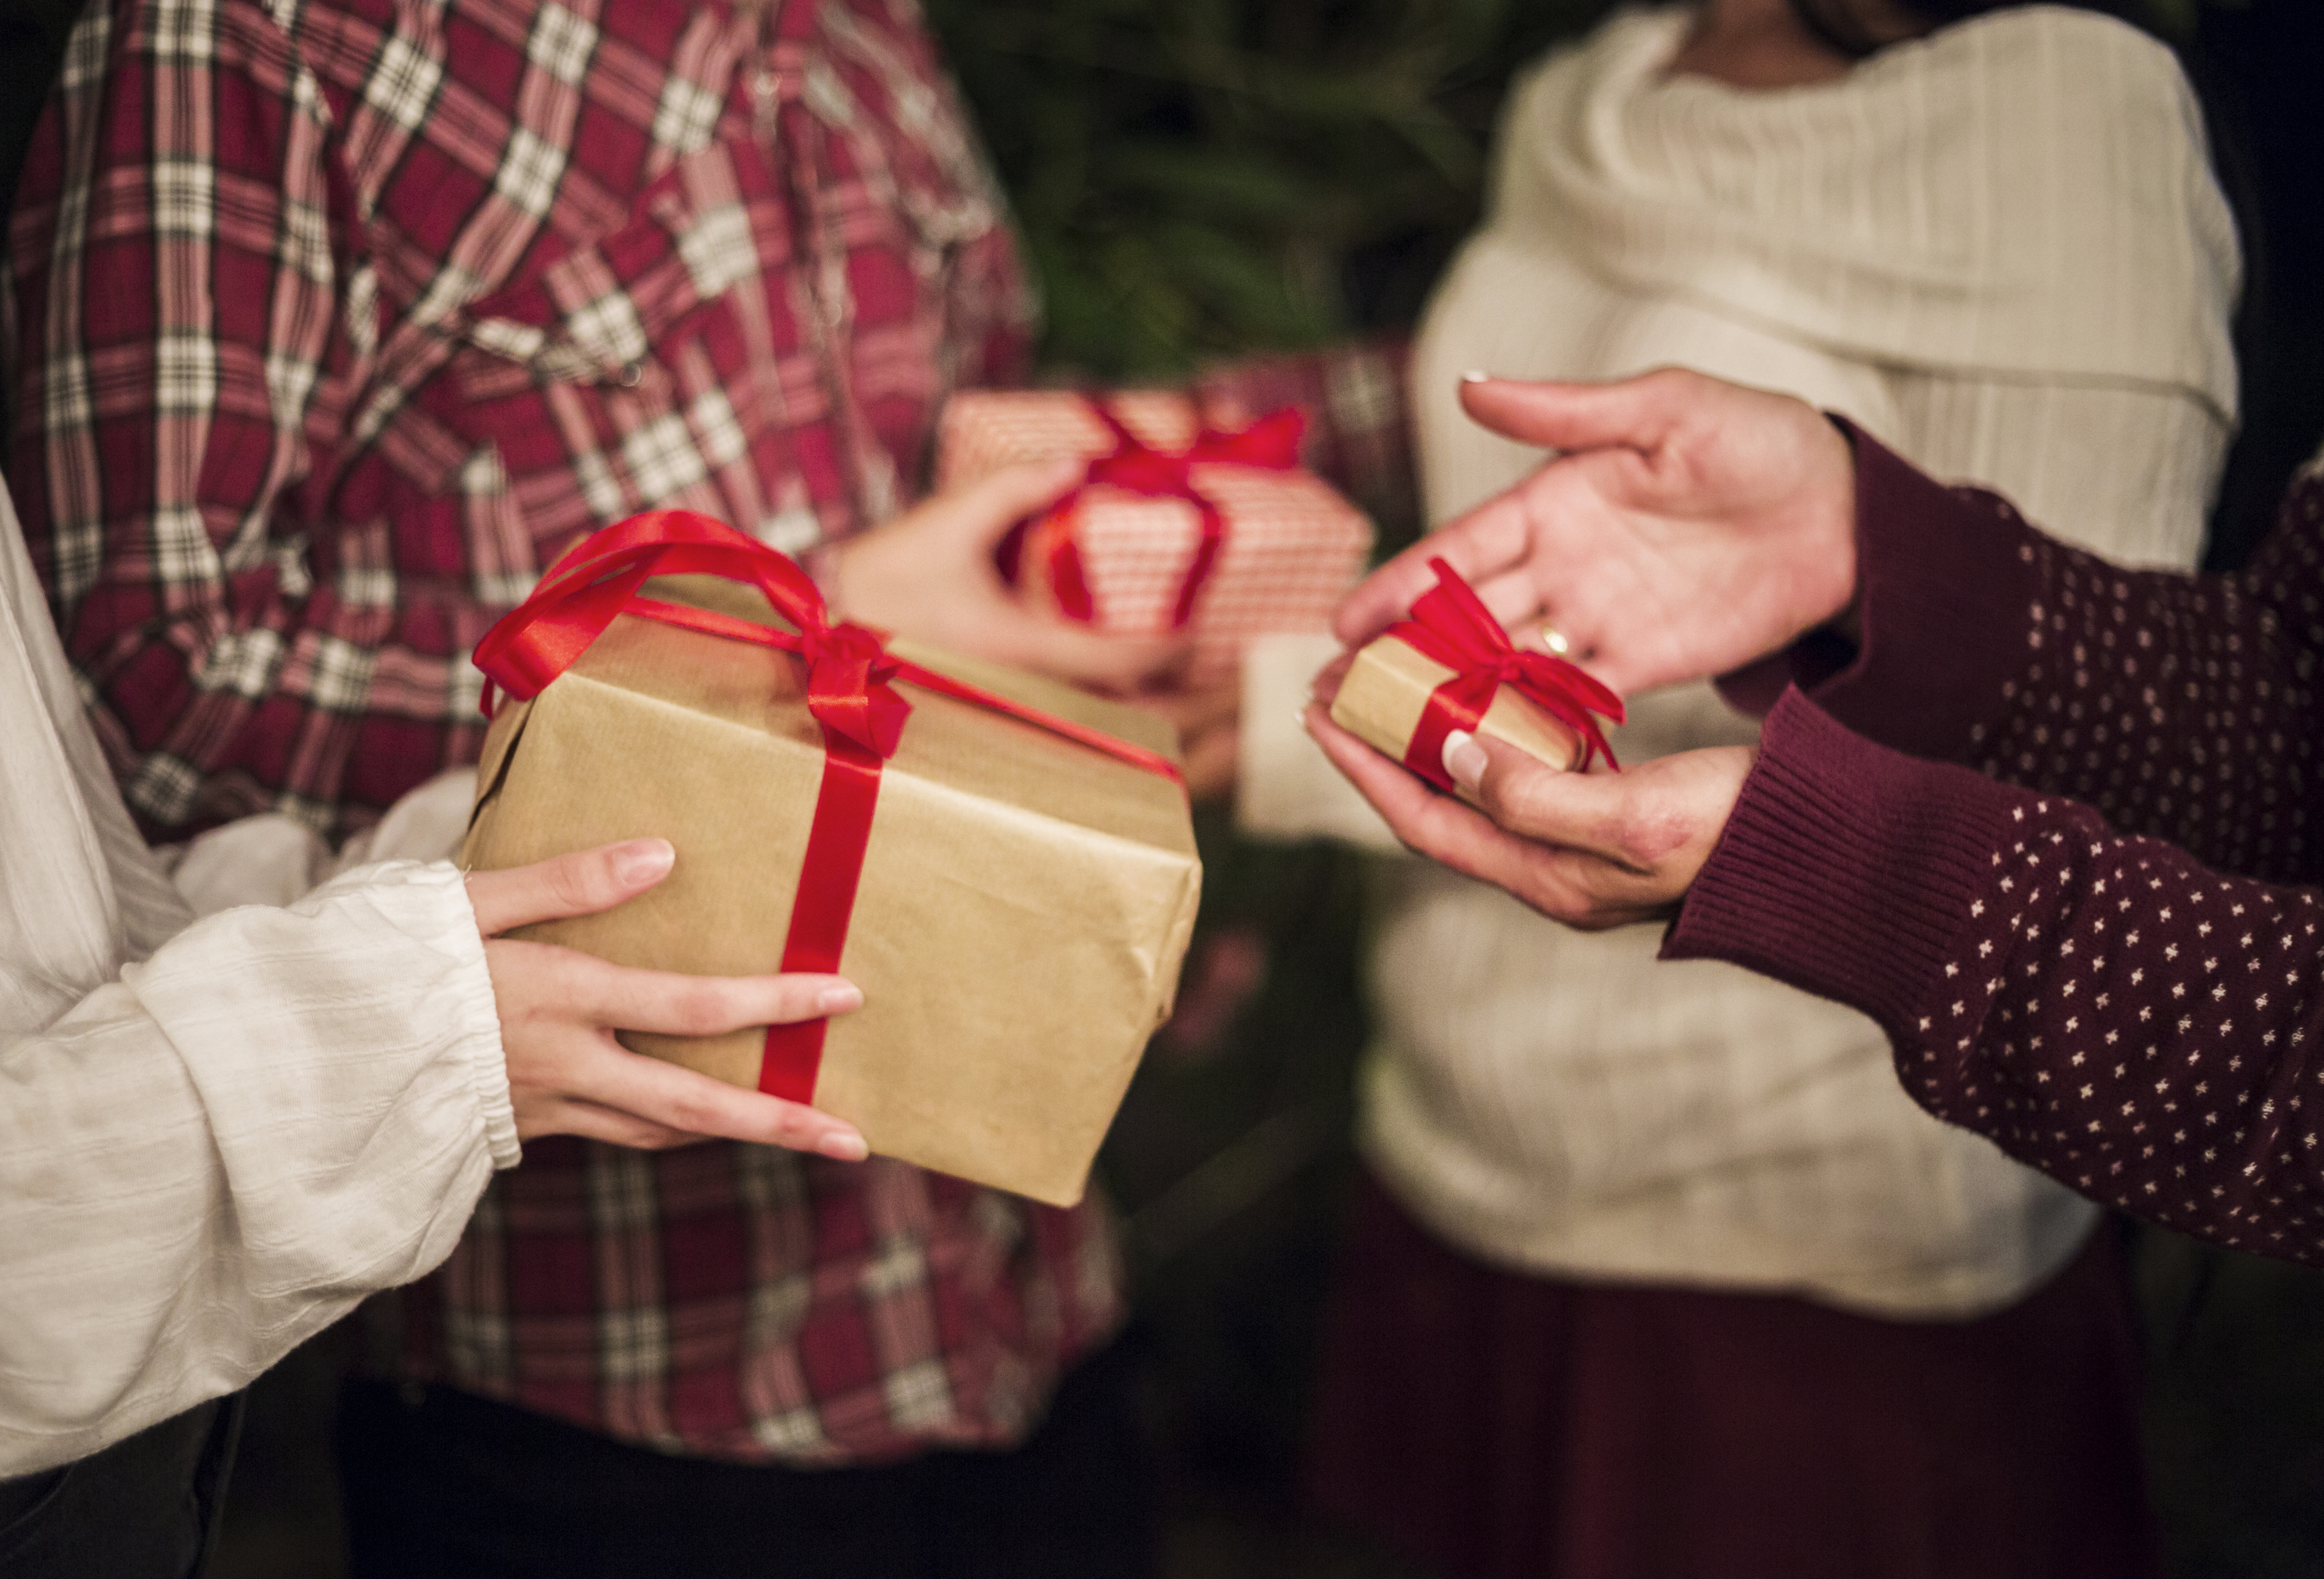 Рождество дарят подарки. Подарки. Человек дарит подарок. Новогодний подарок в руках. Вручение подарка.